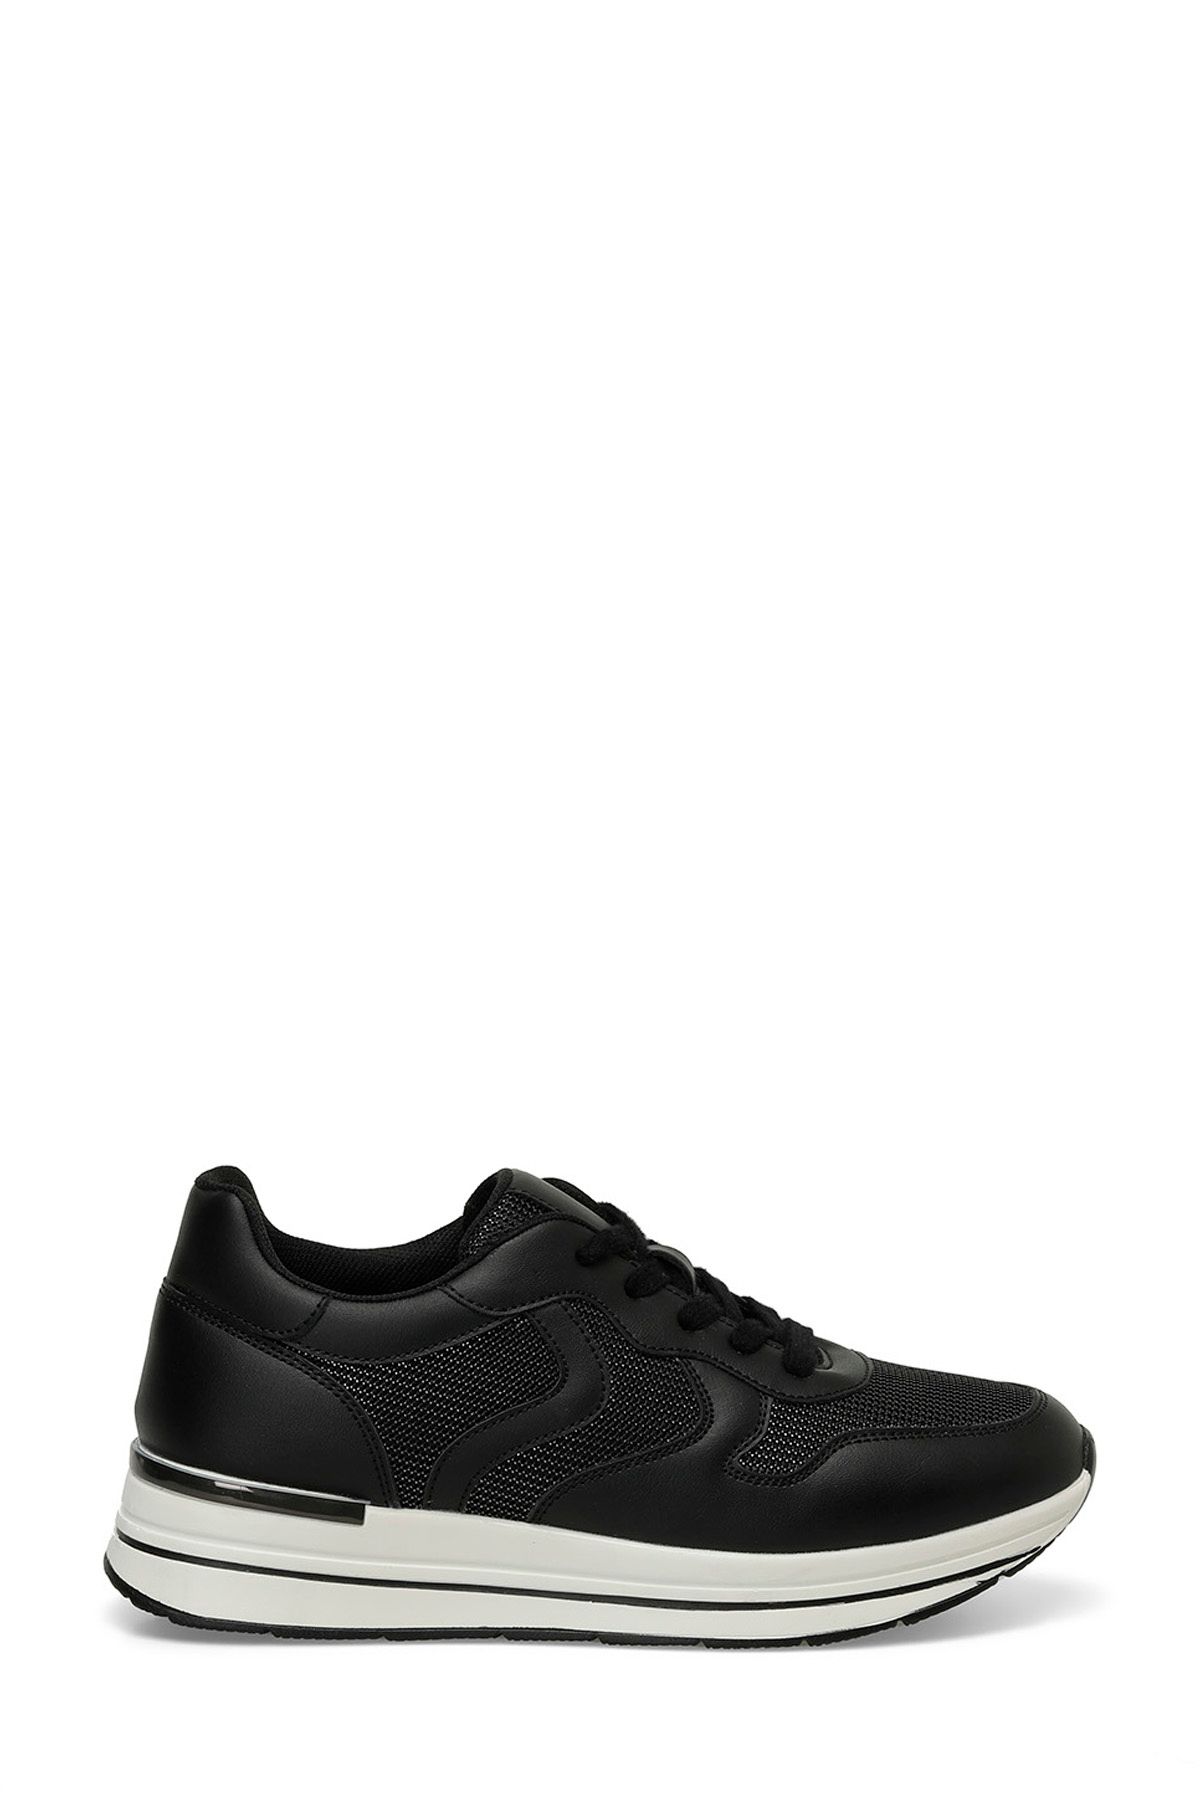 Polaris 323524.Z 4FX Siyah Kadın Sneaker